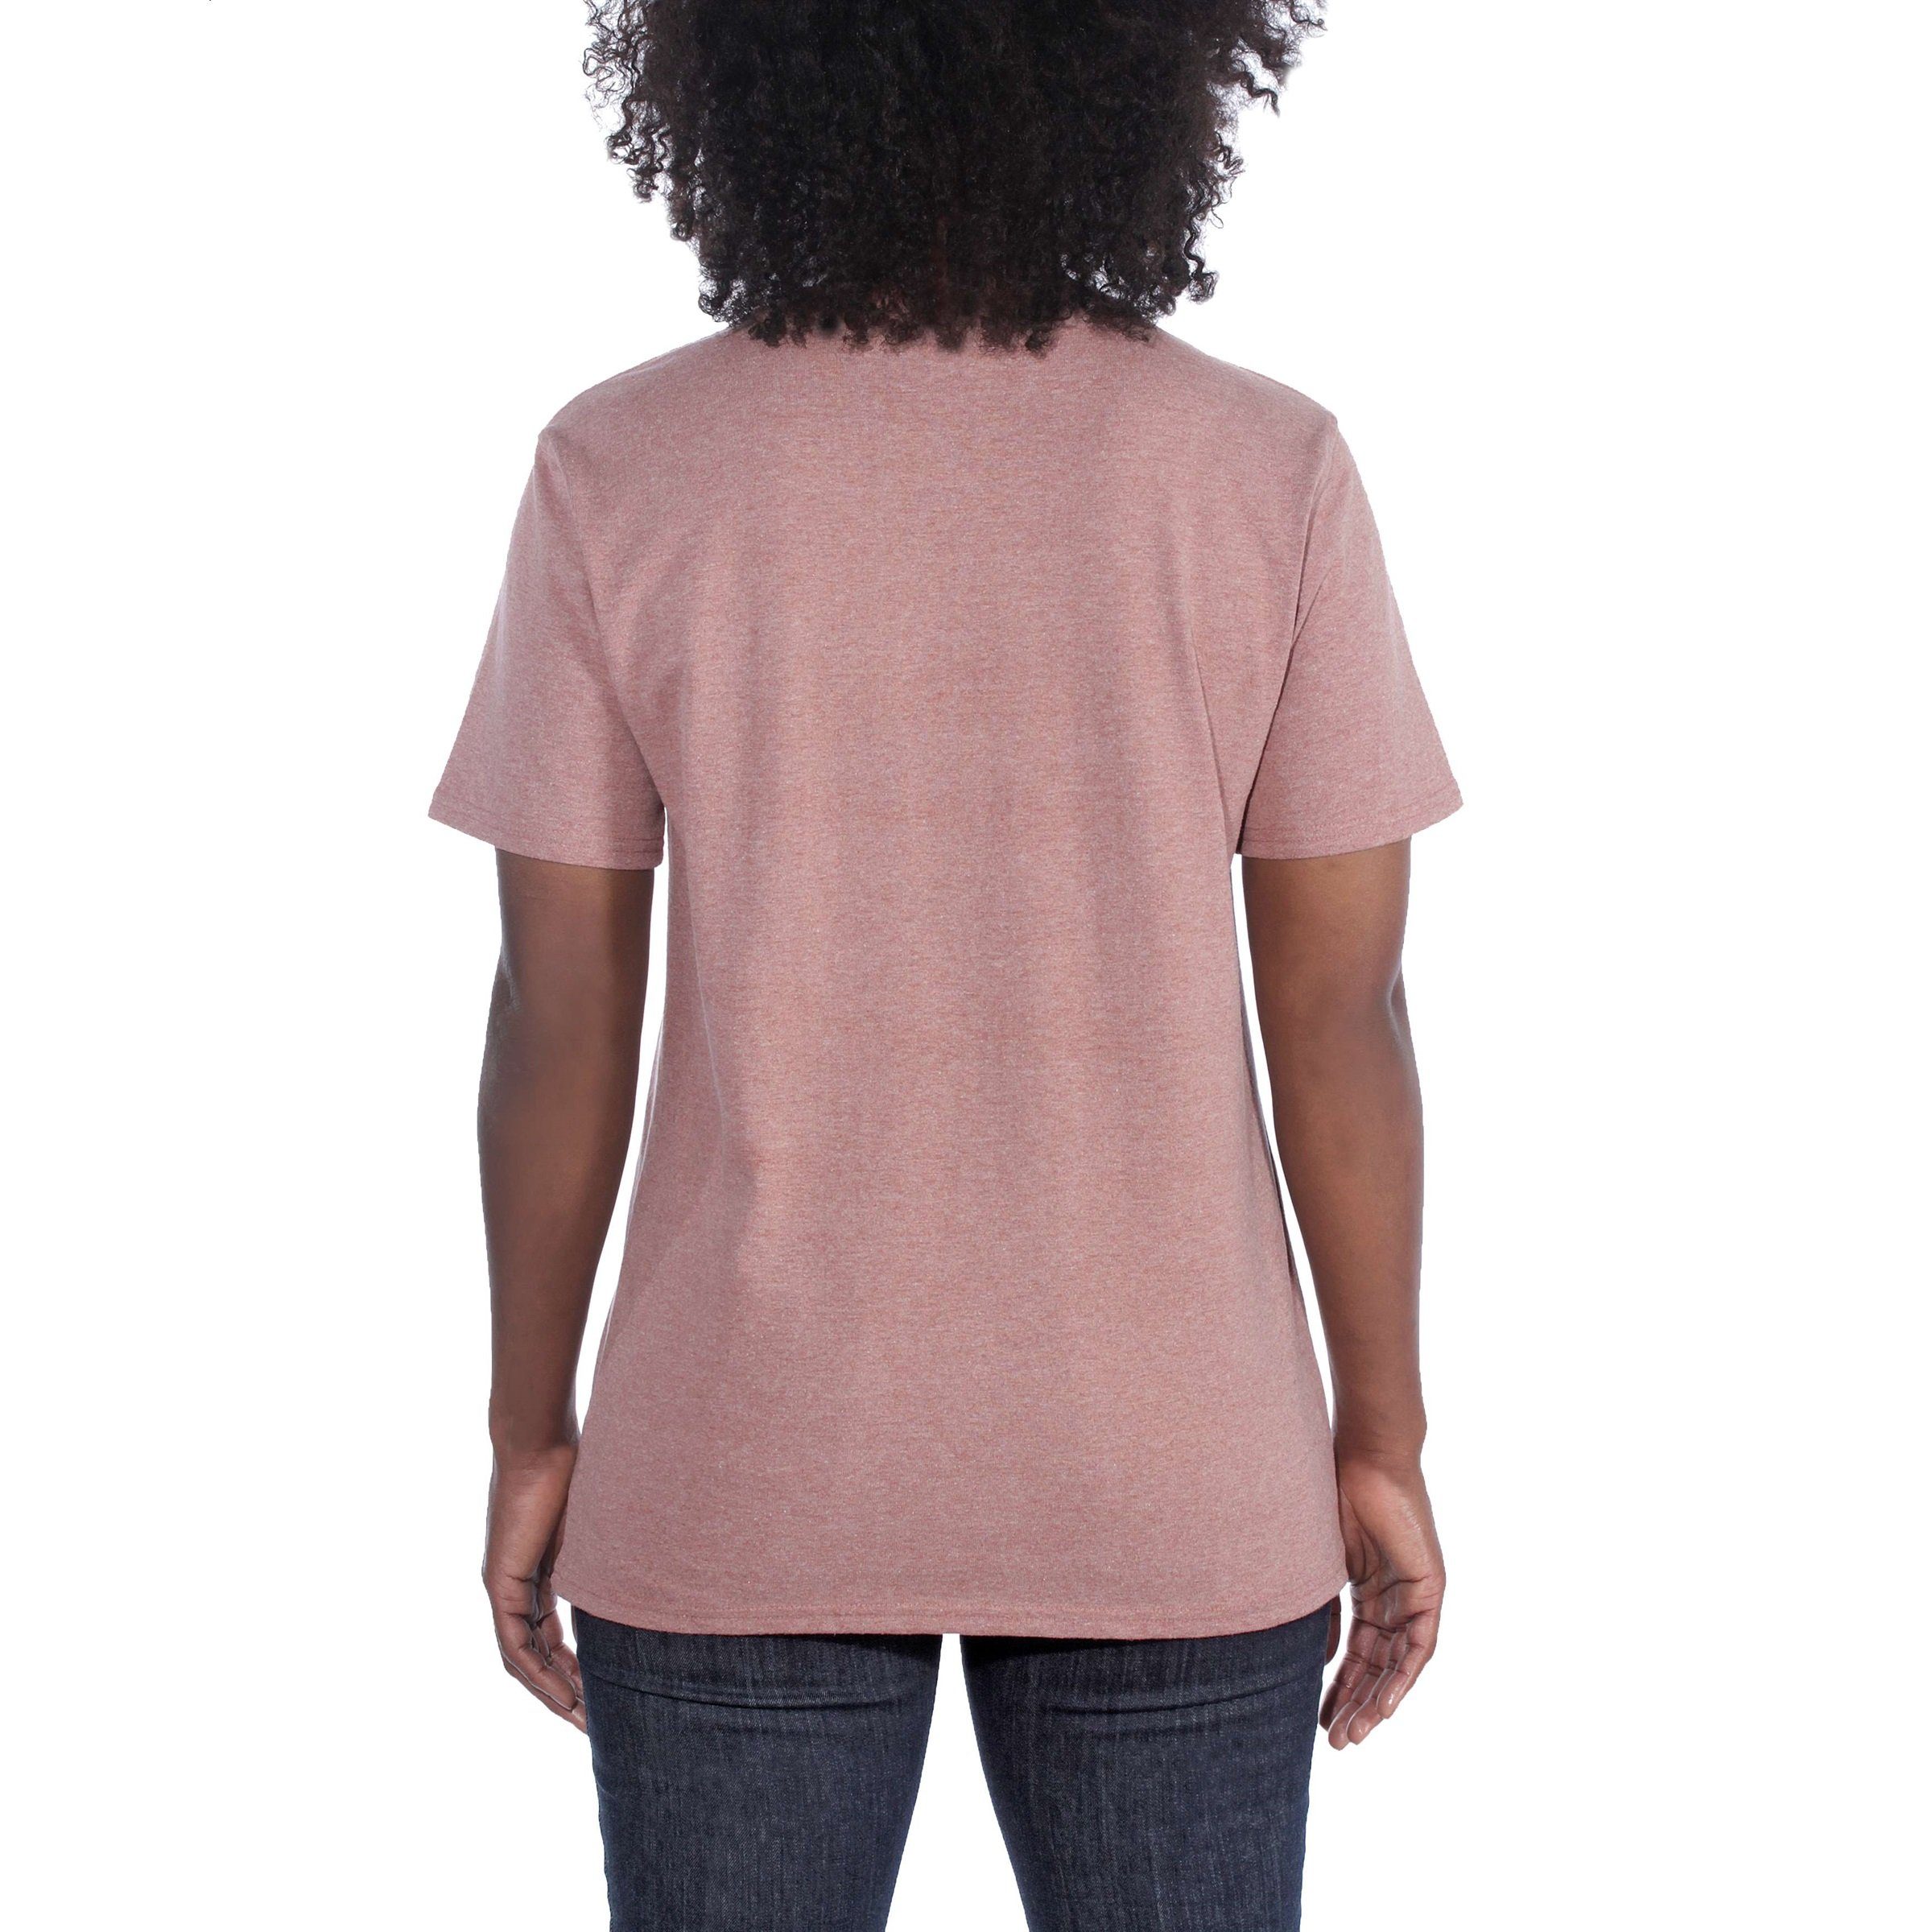 T-Shirt Carhartt Loose T-Shirt Short-Sleeve mink Damen Fit Carhartt Adult Pocket Heavyweight